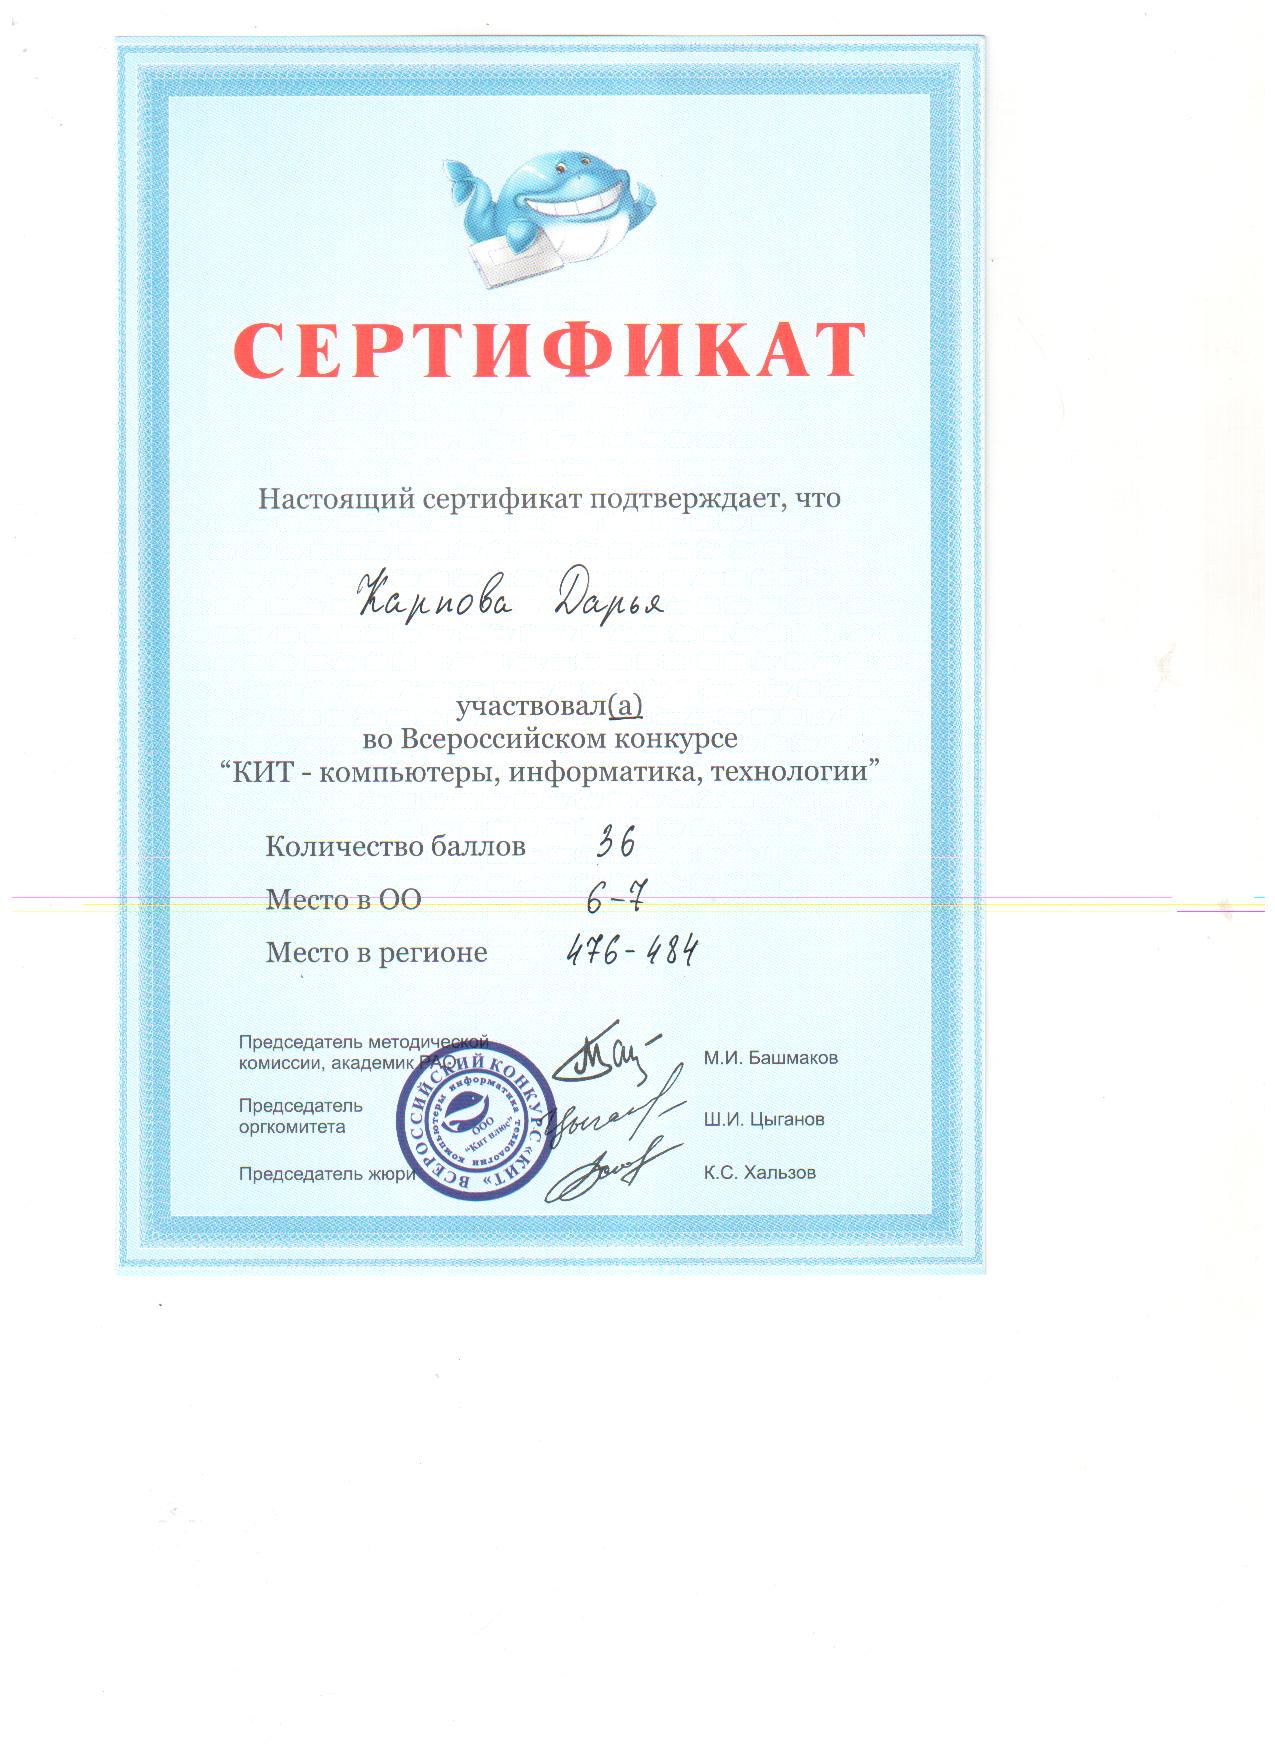 Сертификат "Кит"